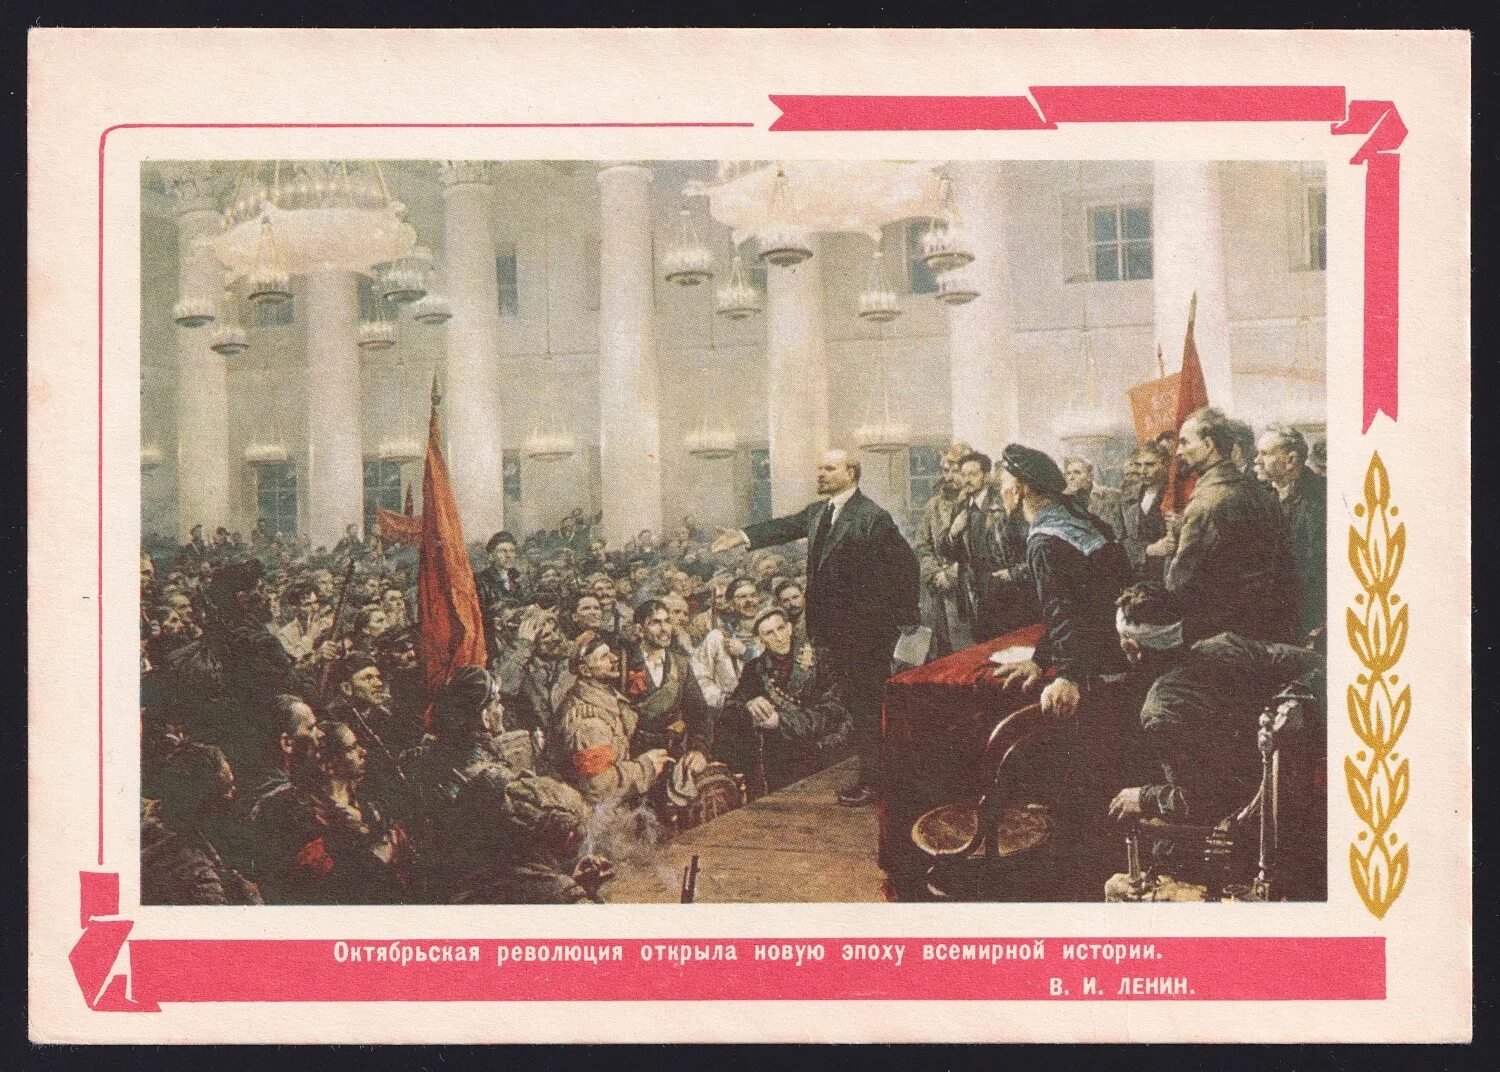 Октябрьская революция 61. Серов революция. Ленин в октябре картина Серова. Ленин провозглашает советскую власть Почтовая марка. Картины в честь Октябрьской социалистической революции.